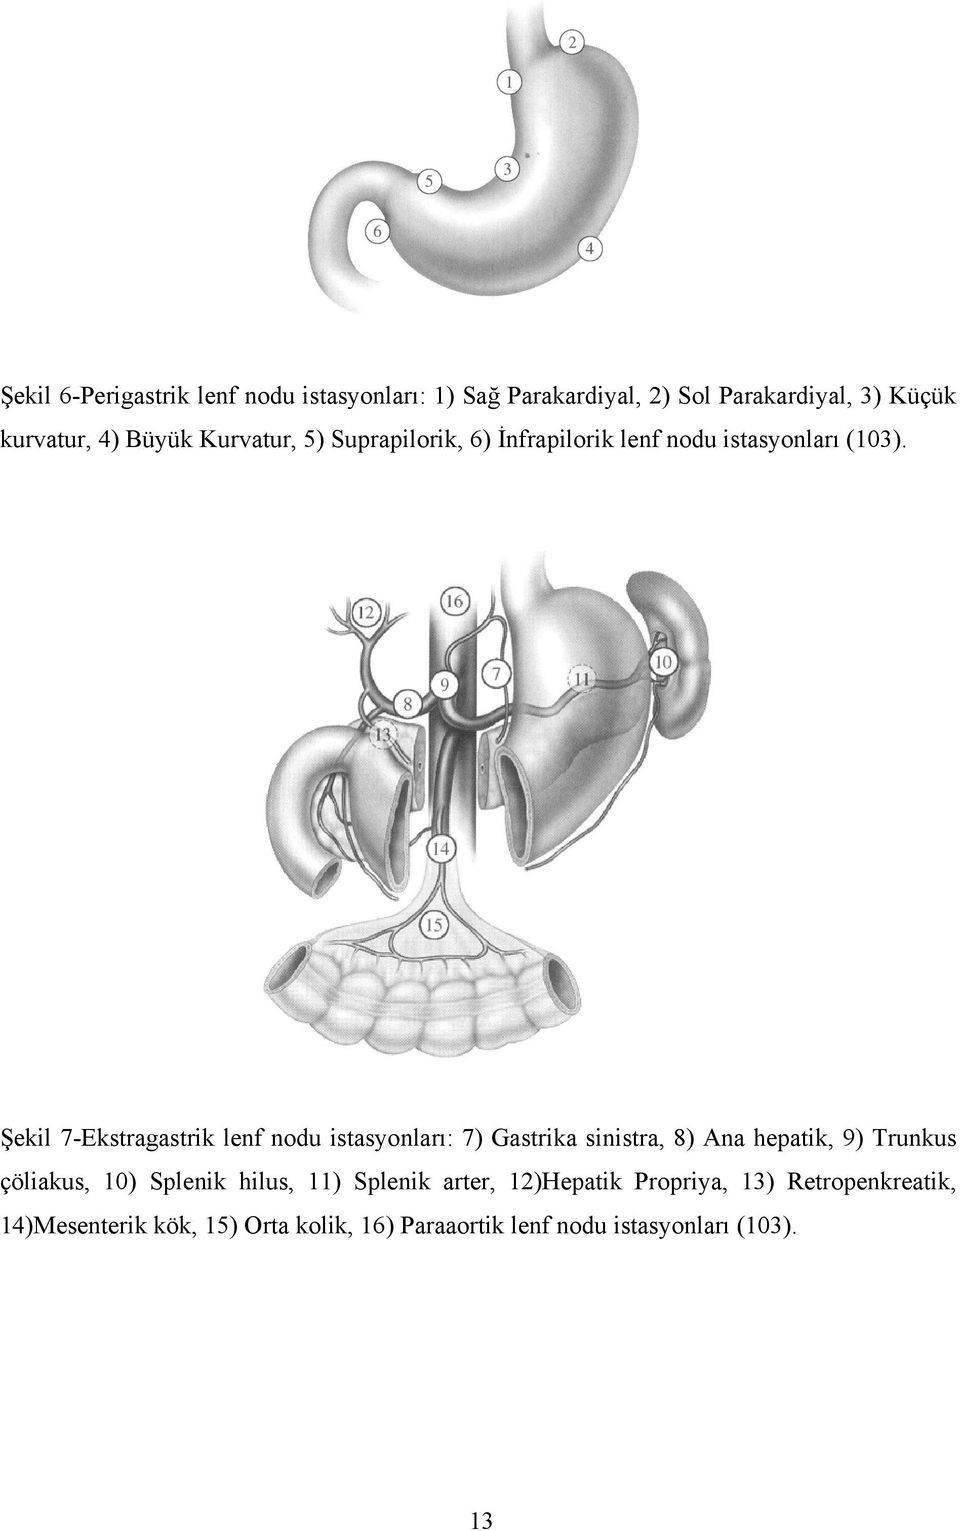 Şekil 7-Ekstragastrik lenf nodu istasyonları: 7) Gastrika sinistra, 8) Ana hepatik, 9) Trunkus çöliakus, 10)